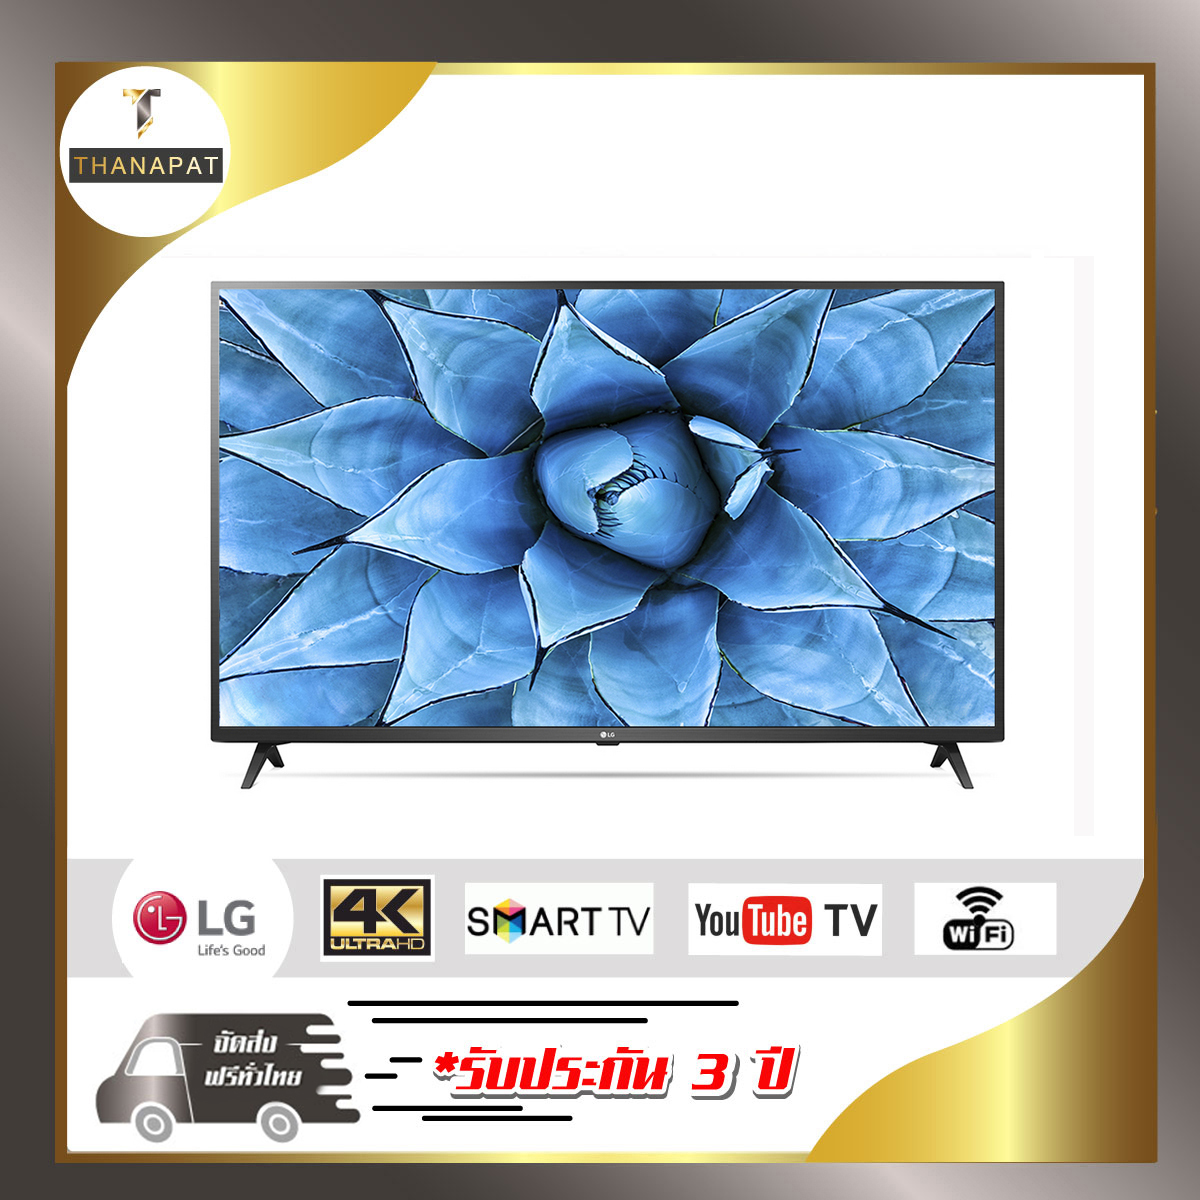 LG Smart TV 4K UHD ThinQ AI 55UN7300 (ปี 2020) 55 นิ้ว รุ่น 55UN7300PTC  สีดำ